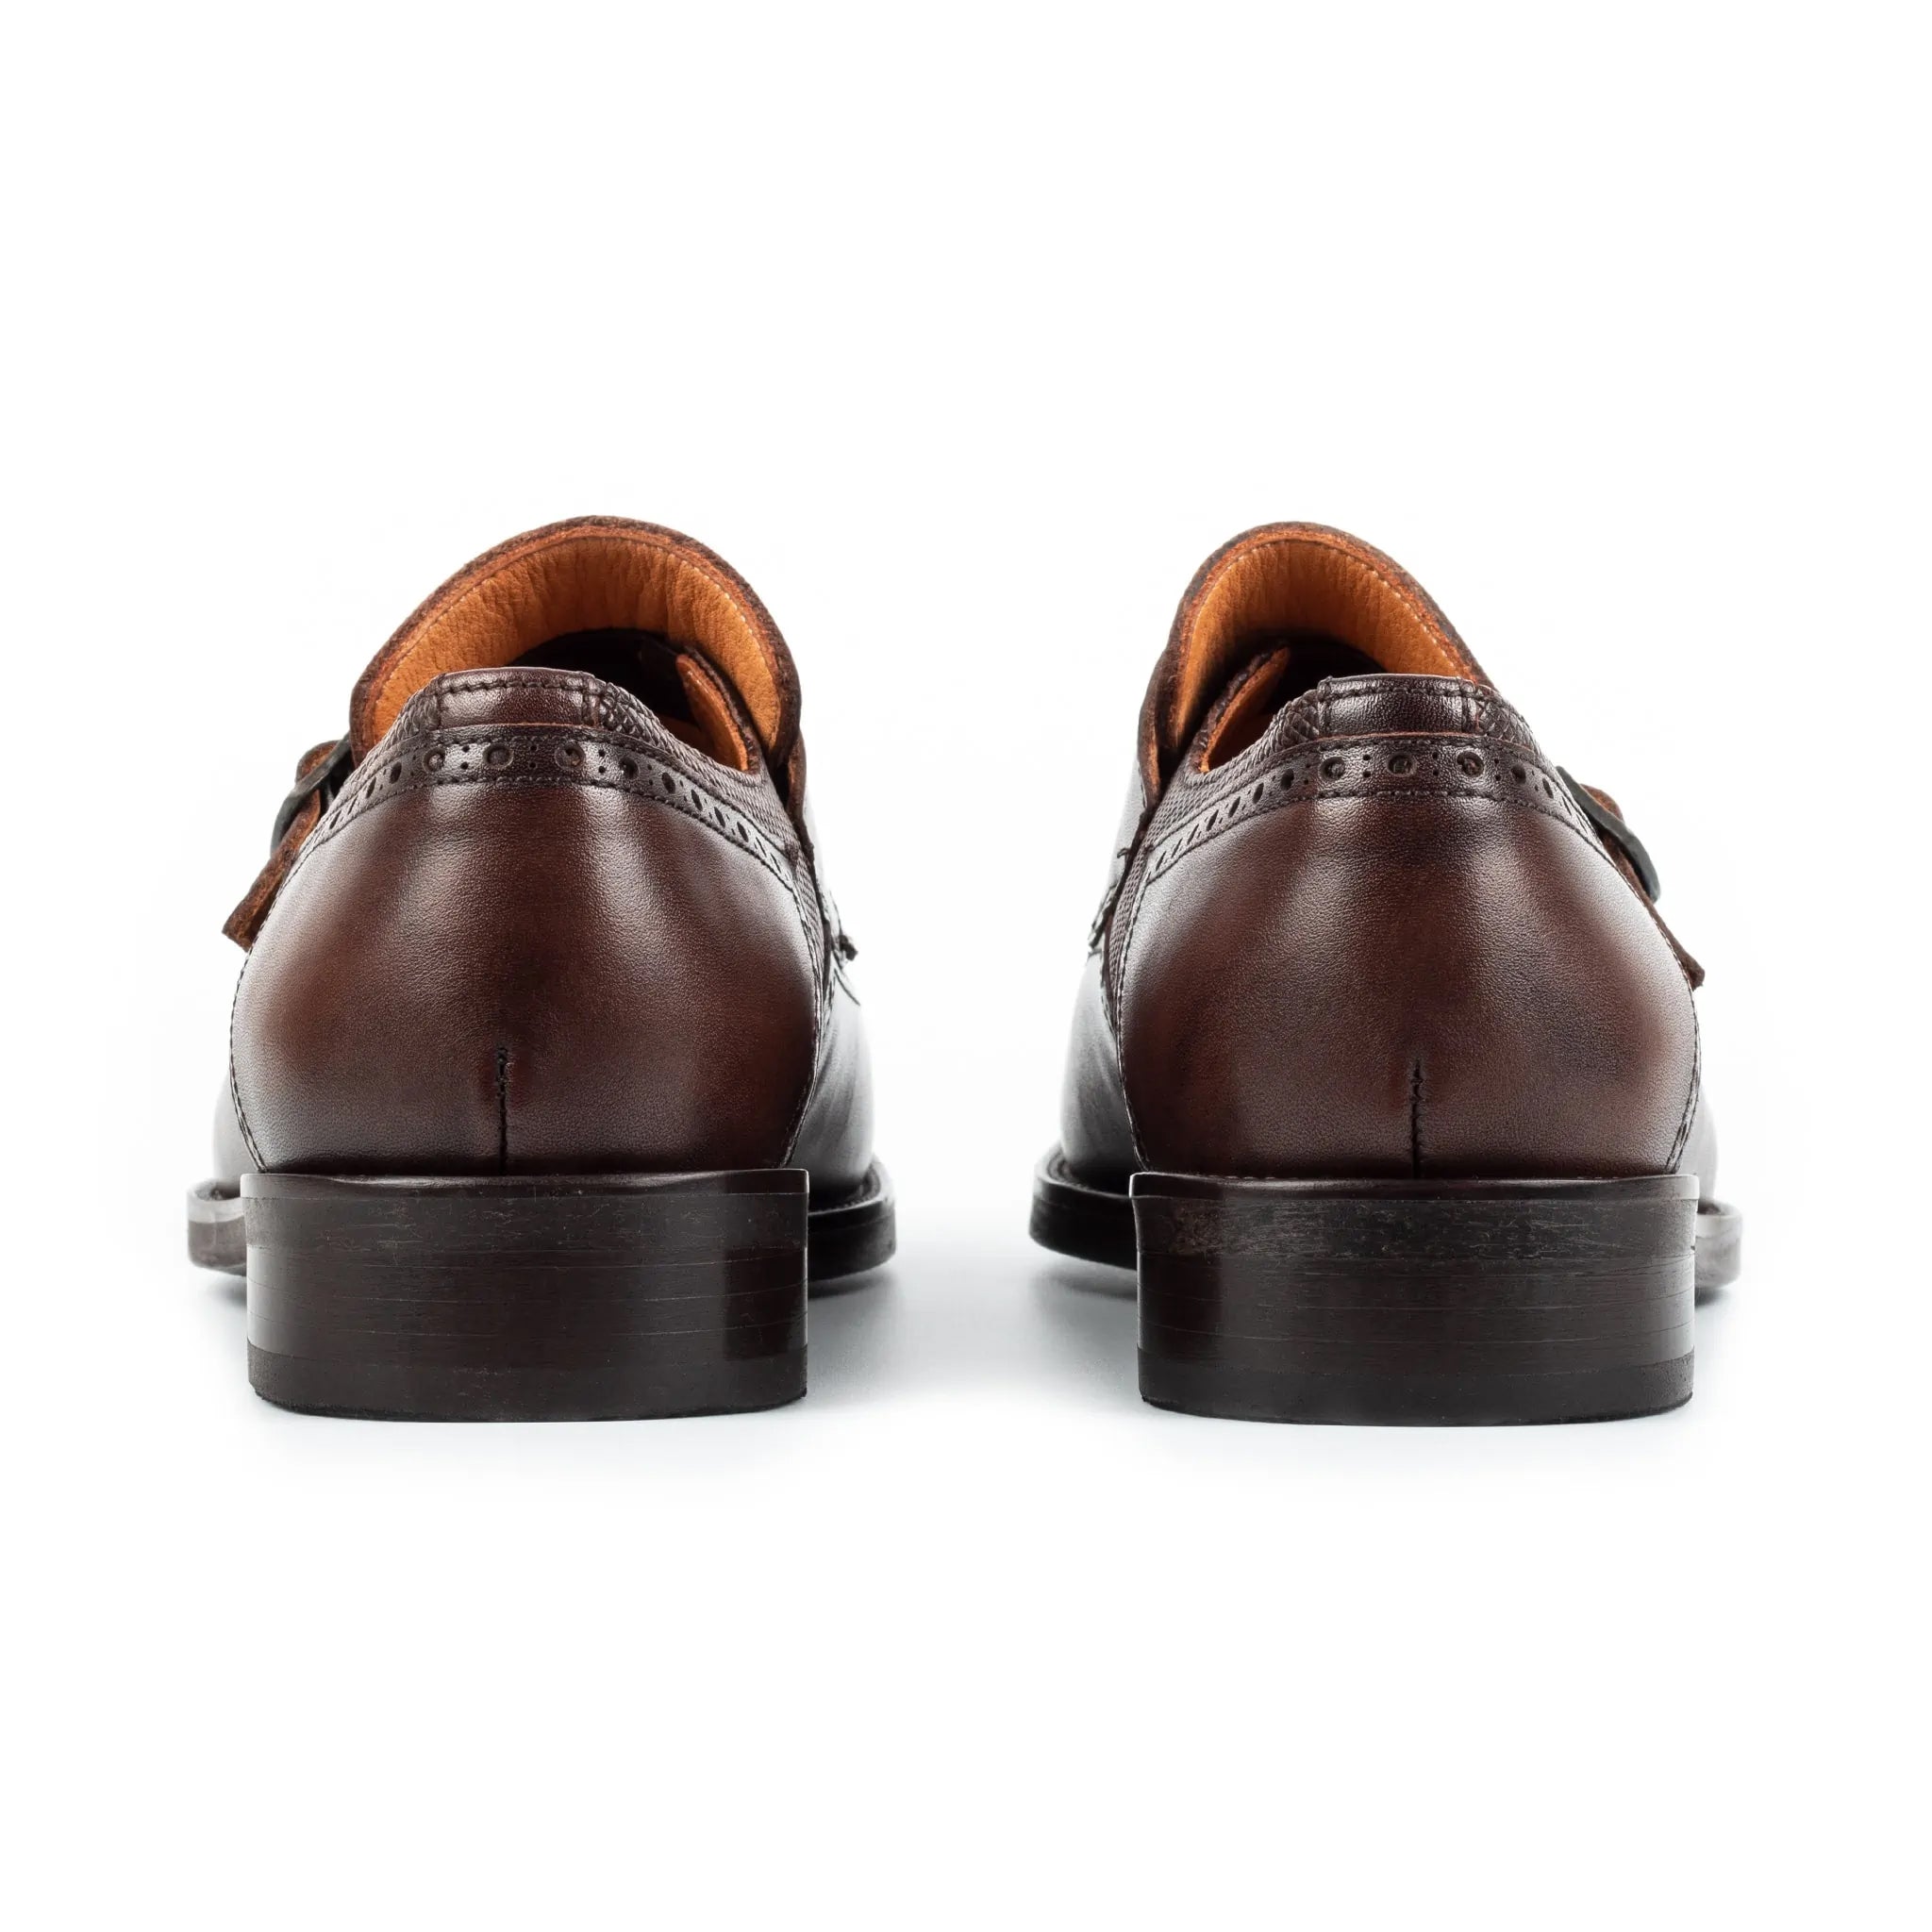 Leather Double Monk Strap Men's Shoes